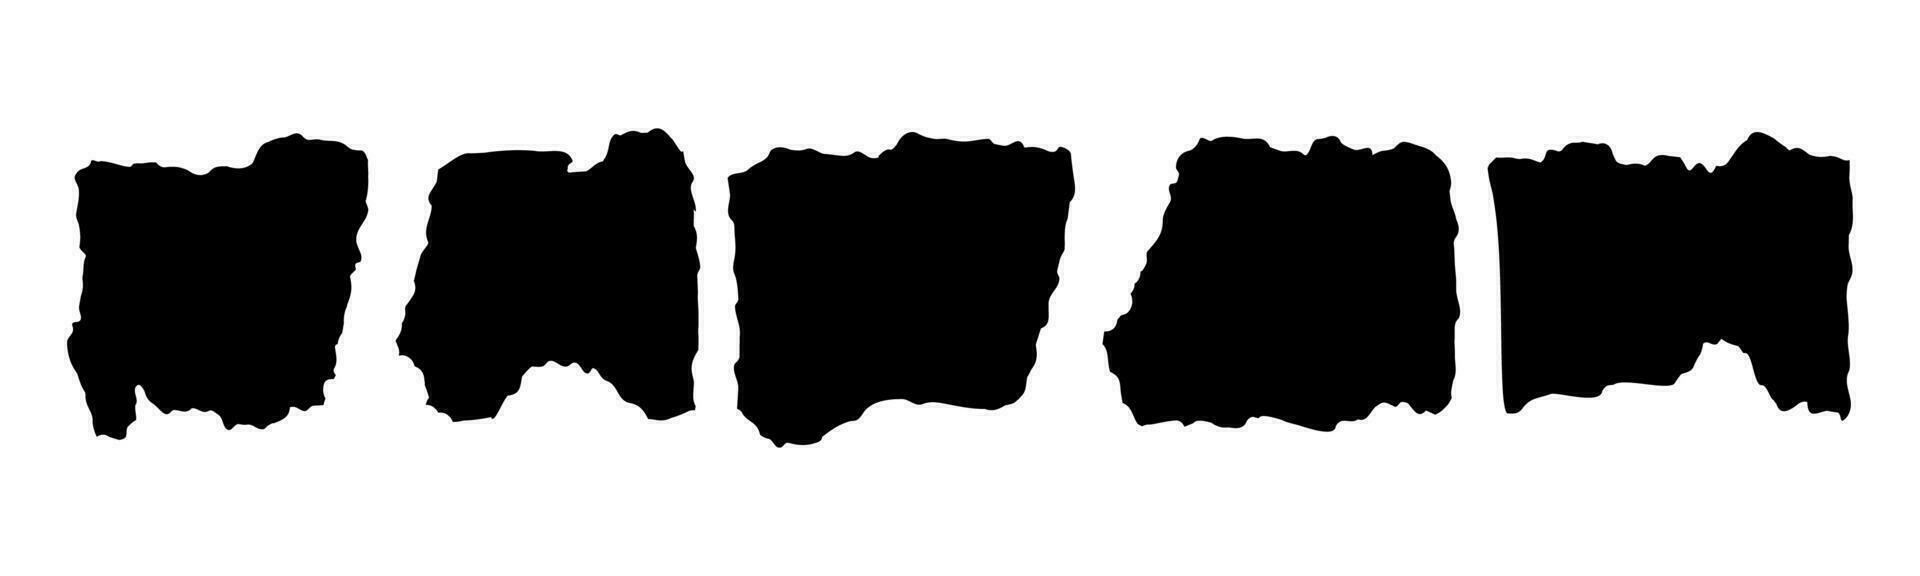 Sammlung von zerrissen Papier Stücke. schwarz Platz Frames mit irregulär Kanten.set von Silhouetten von zerrissen rechteckig Formen. Stück von Grunge Collage Aufkleber. vektor